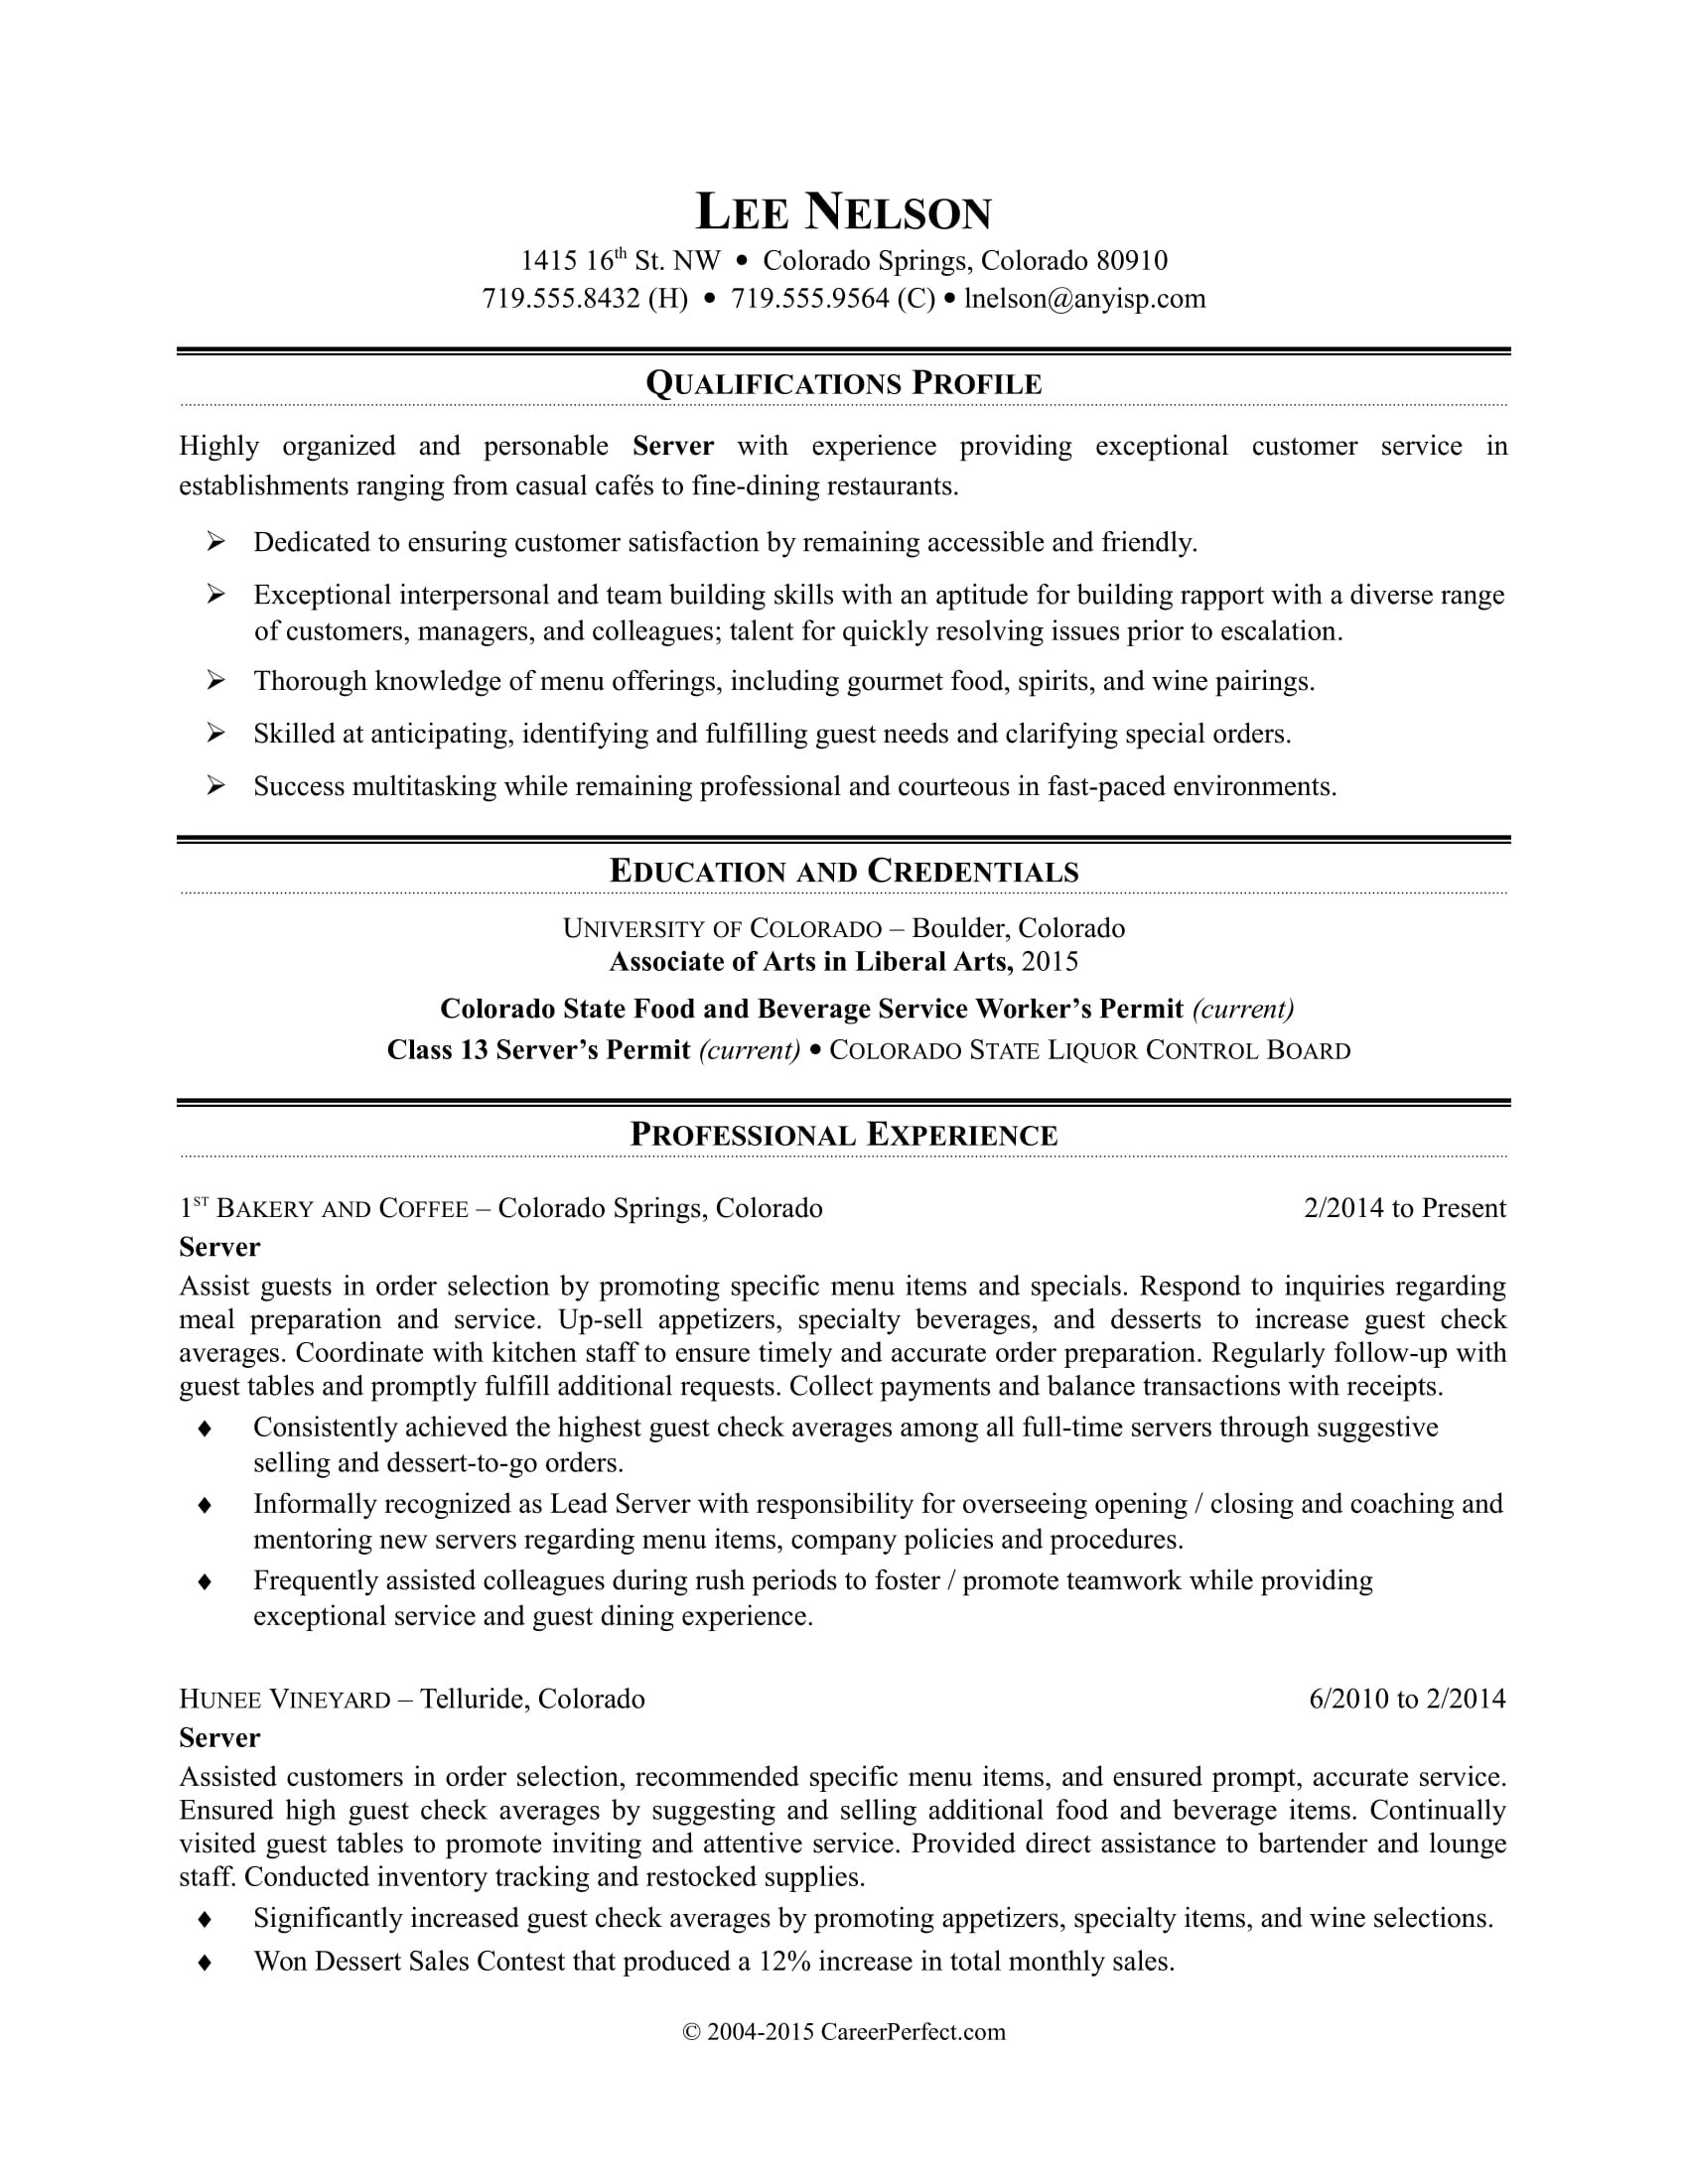 Sample Resume Objective Statement for Food Service Restaurant Server Resume Sample Monster.com